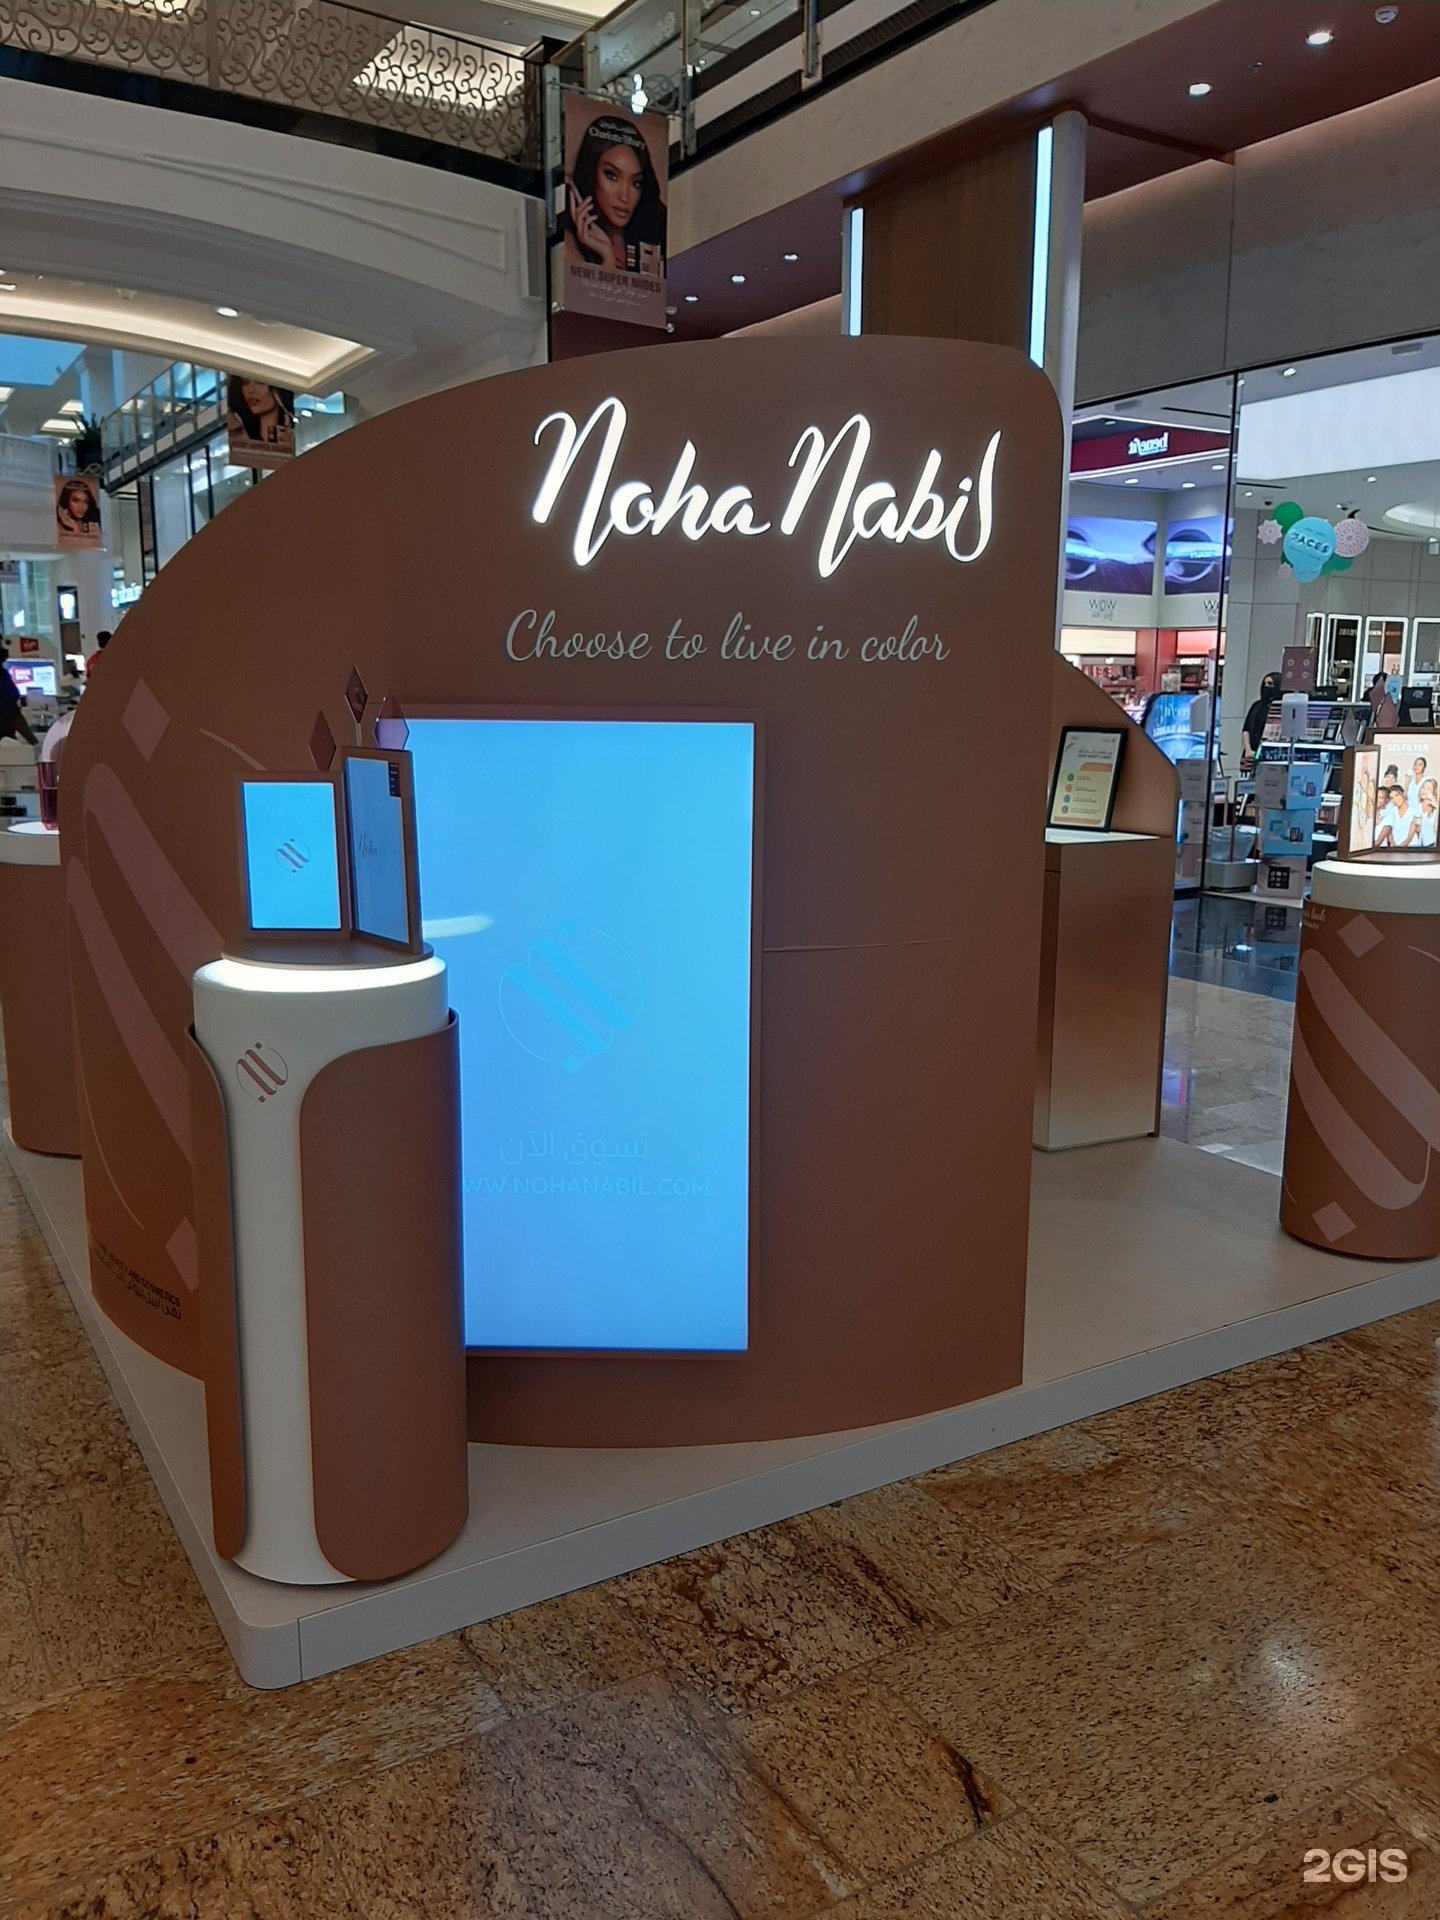 Le Khôl – El Nabil – Dubai-shop